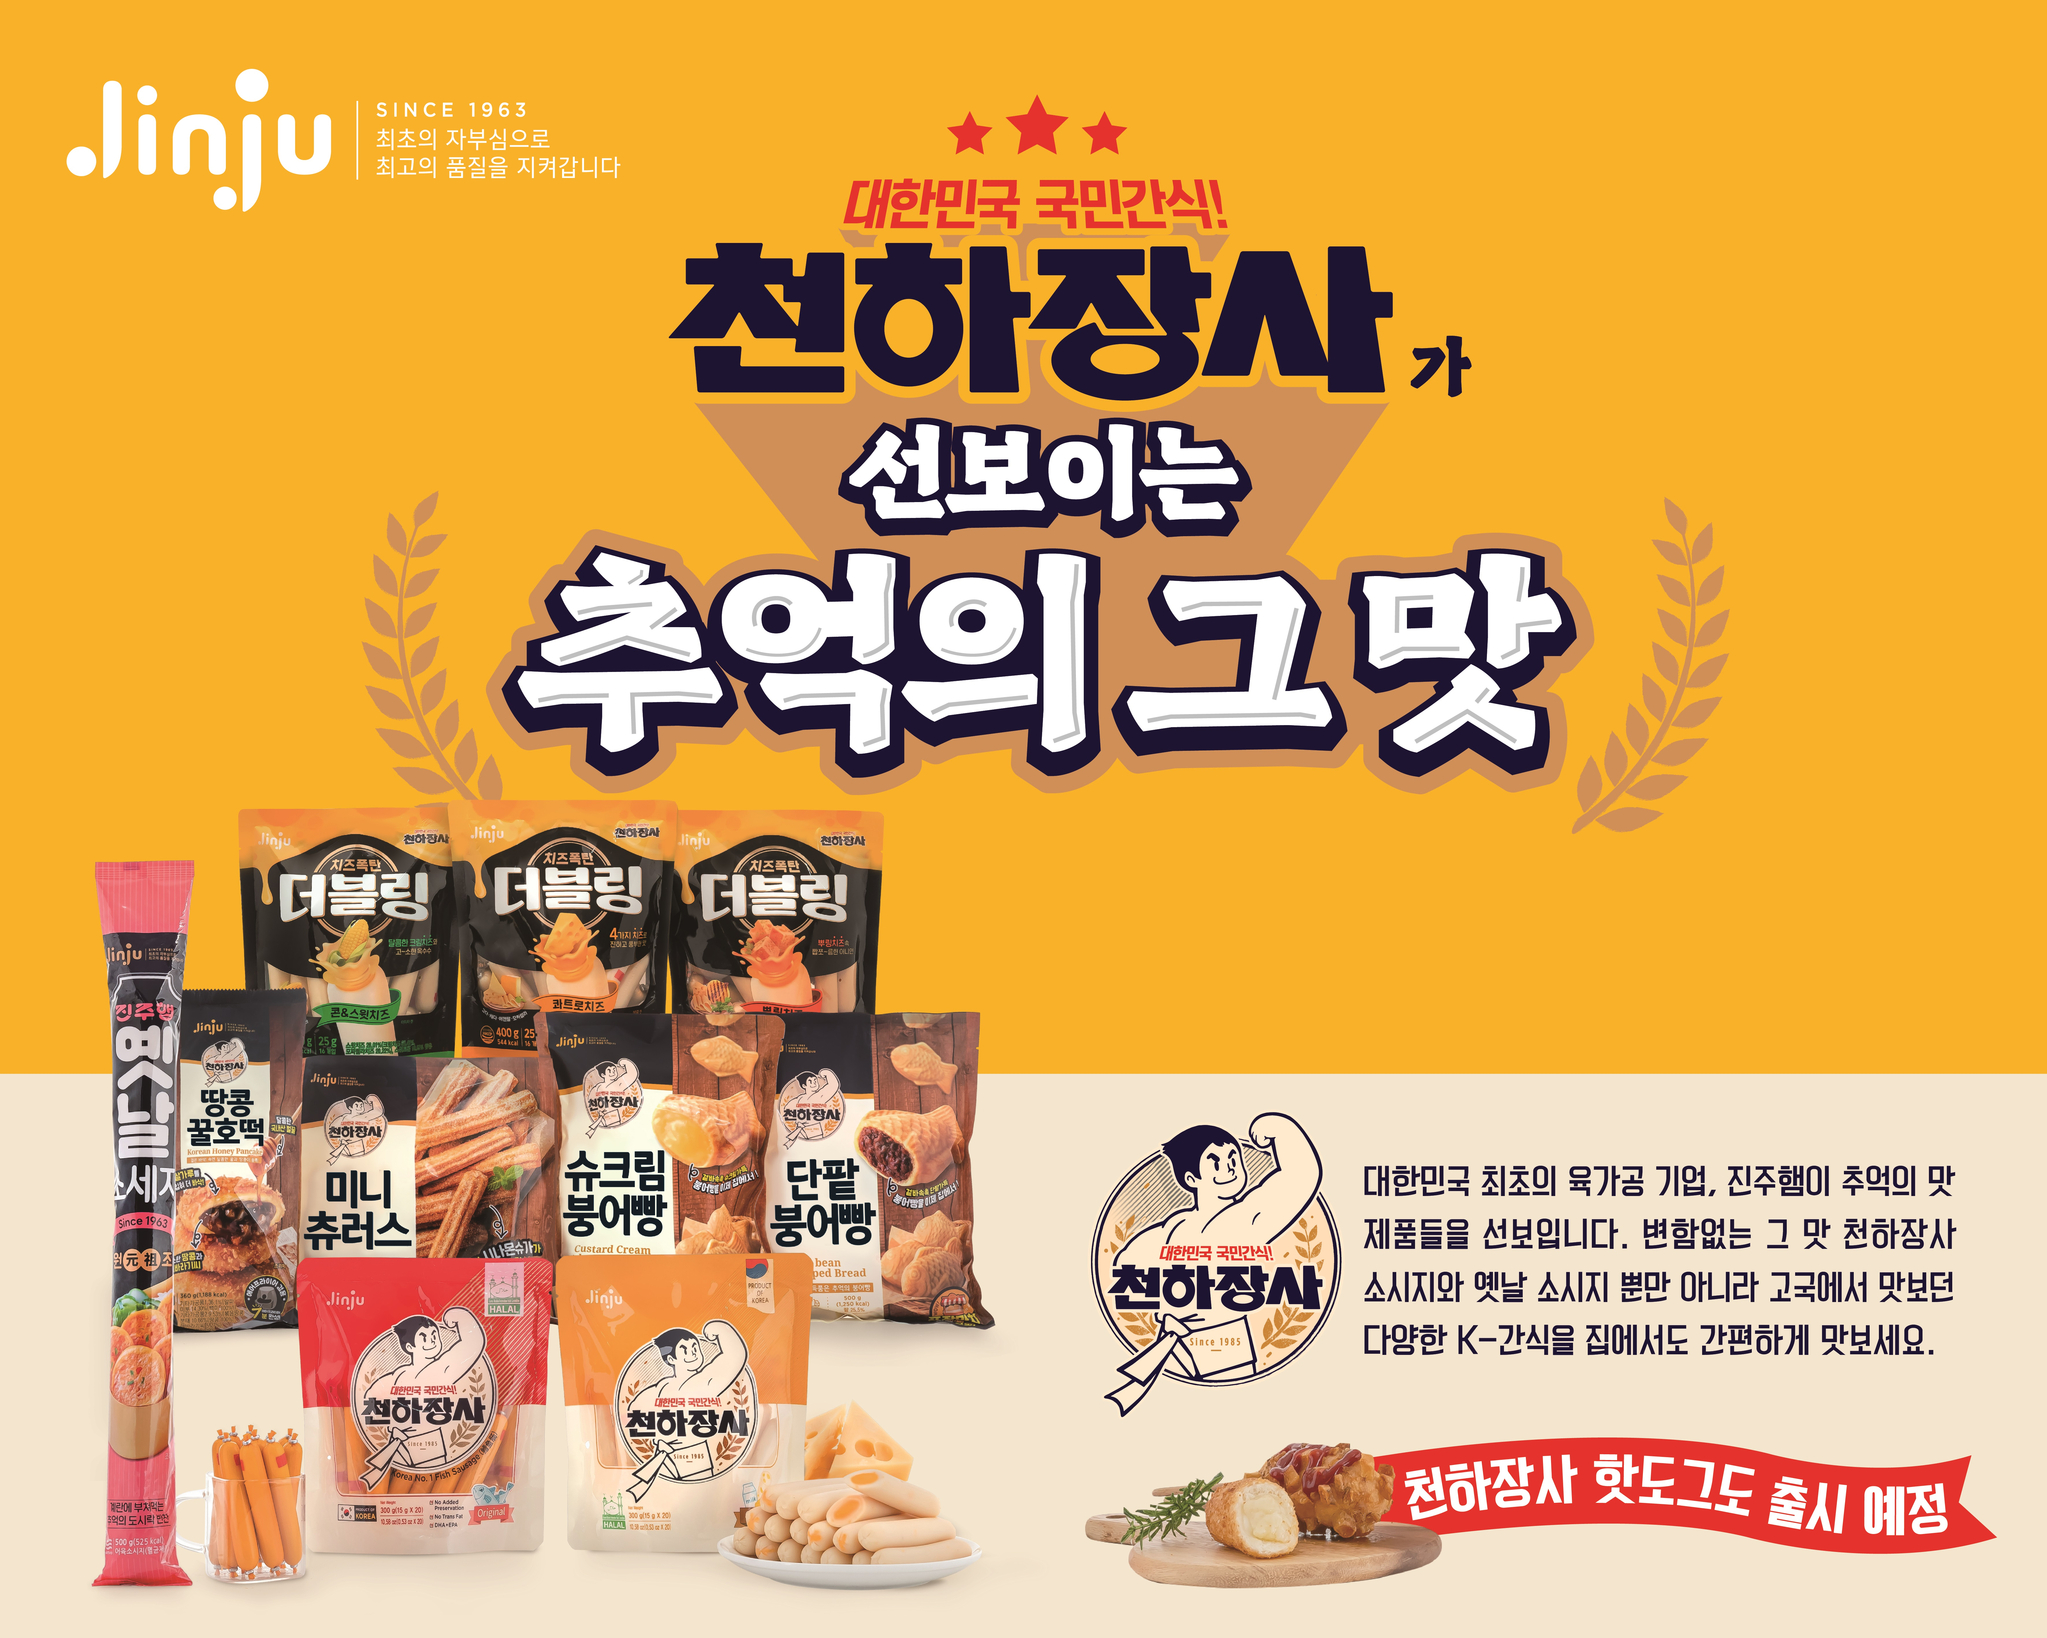 대한민국 최초의 육가공기업 '진주햄'이 추억의 맛 제품들을 다양하게 선보인다. 